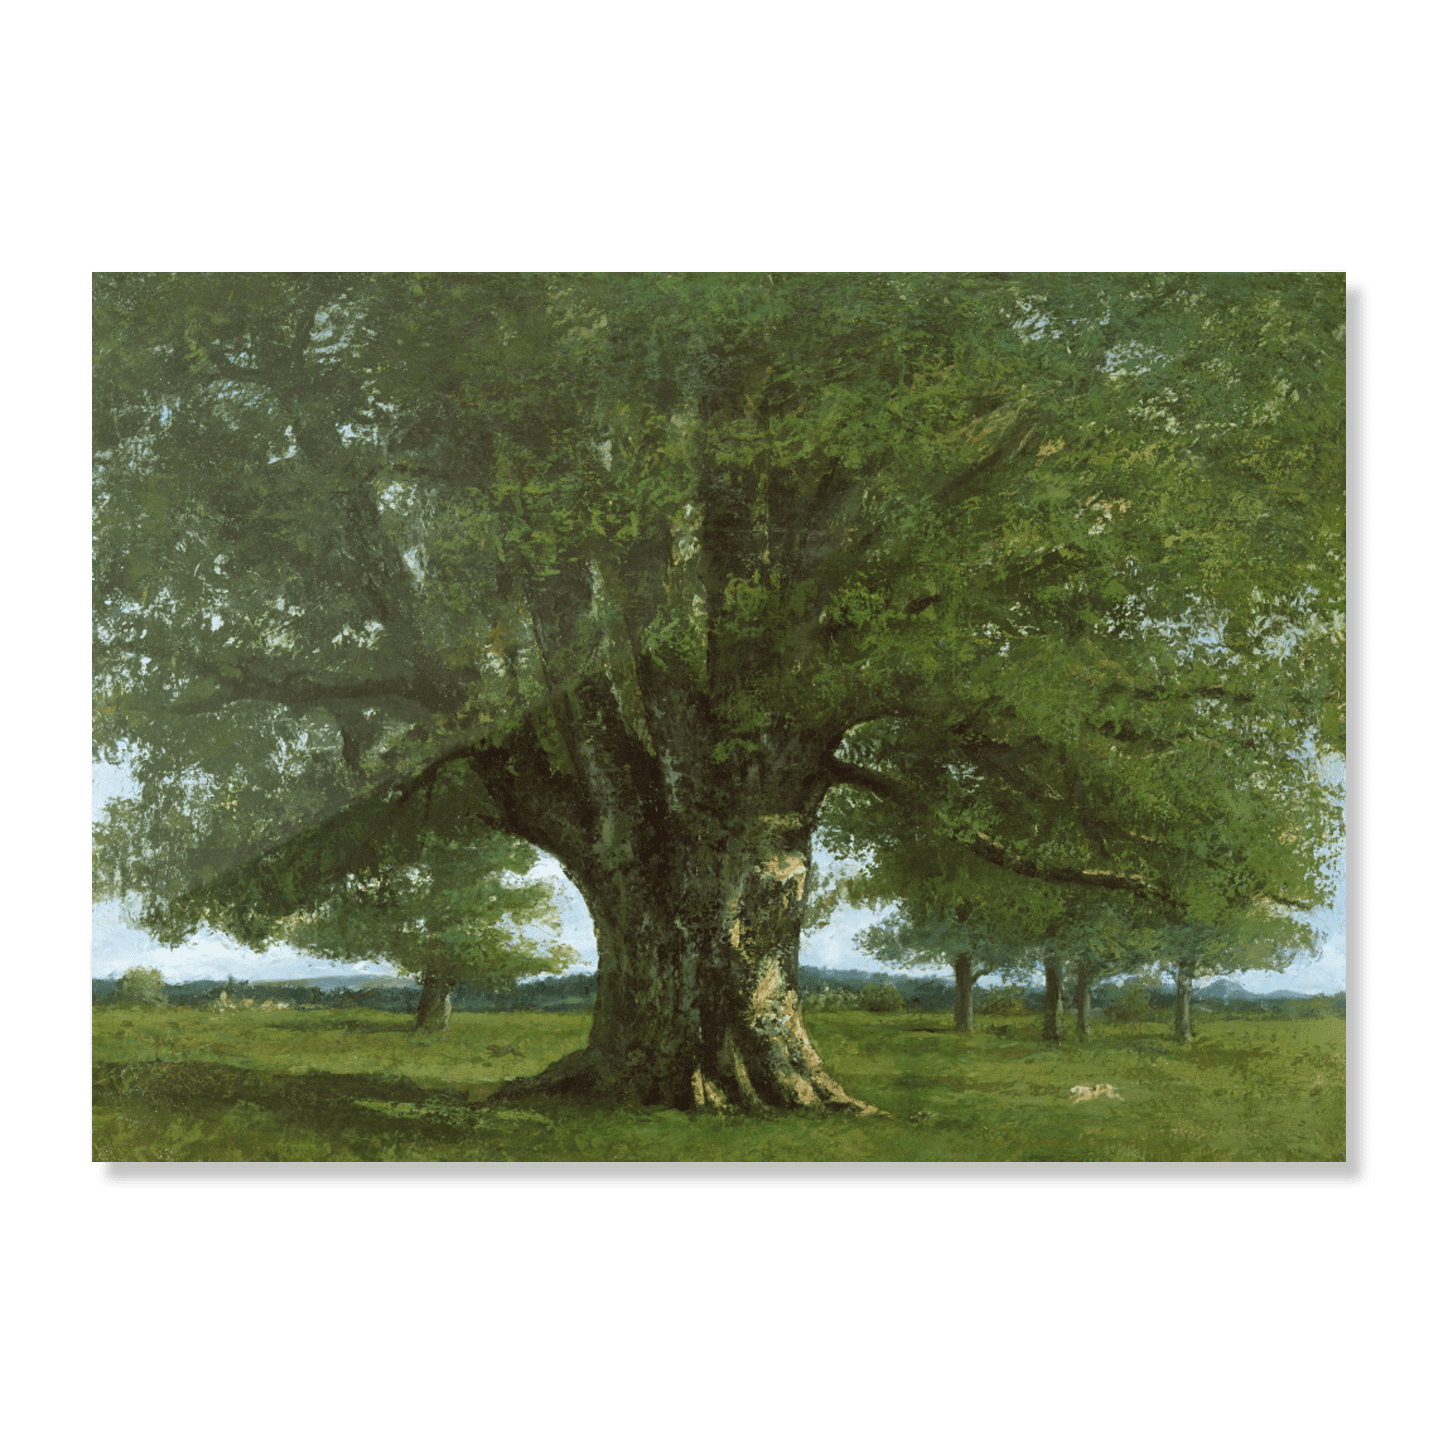 오르낭의 큰 떡갈나무